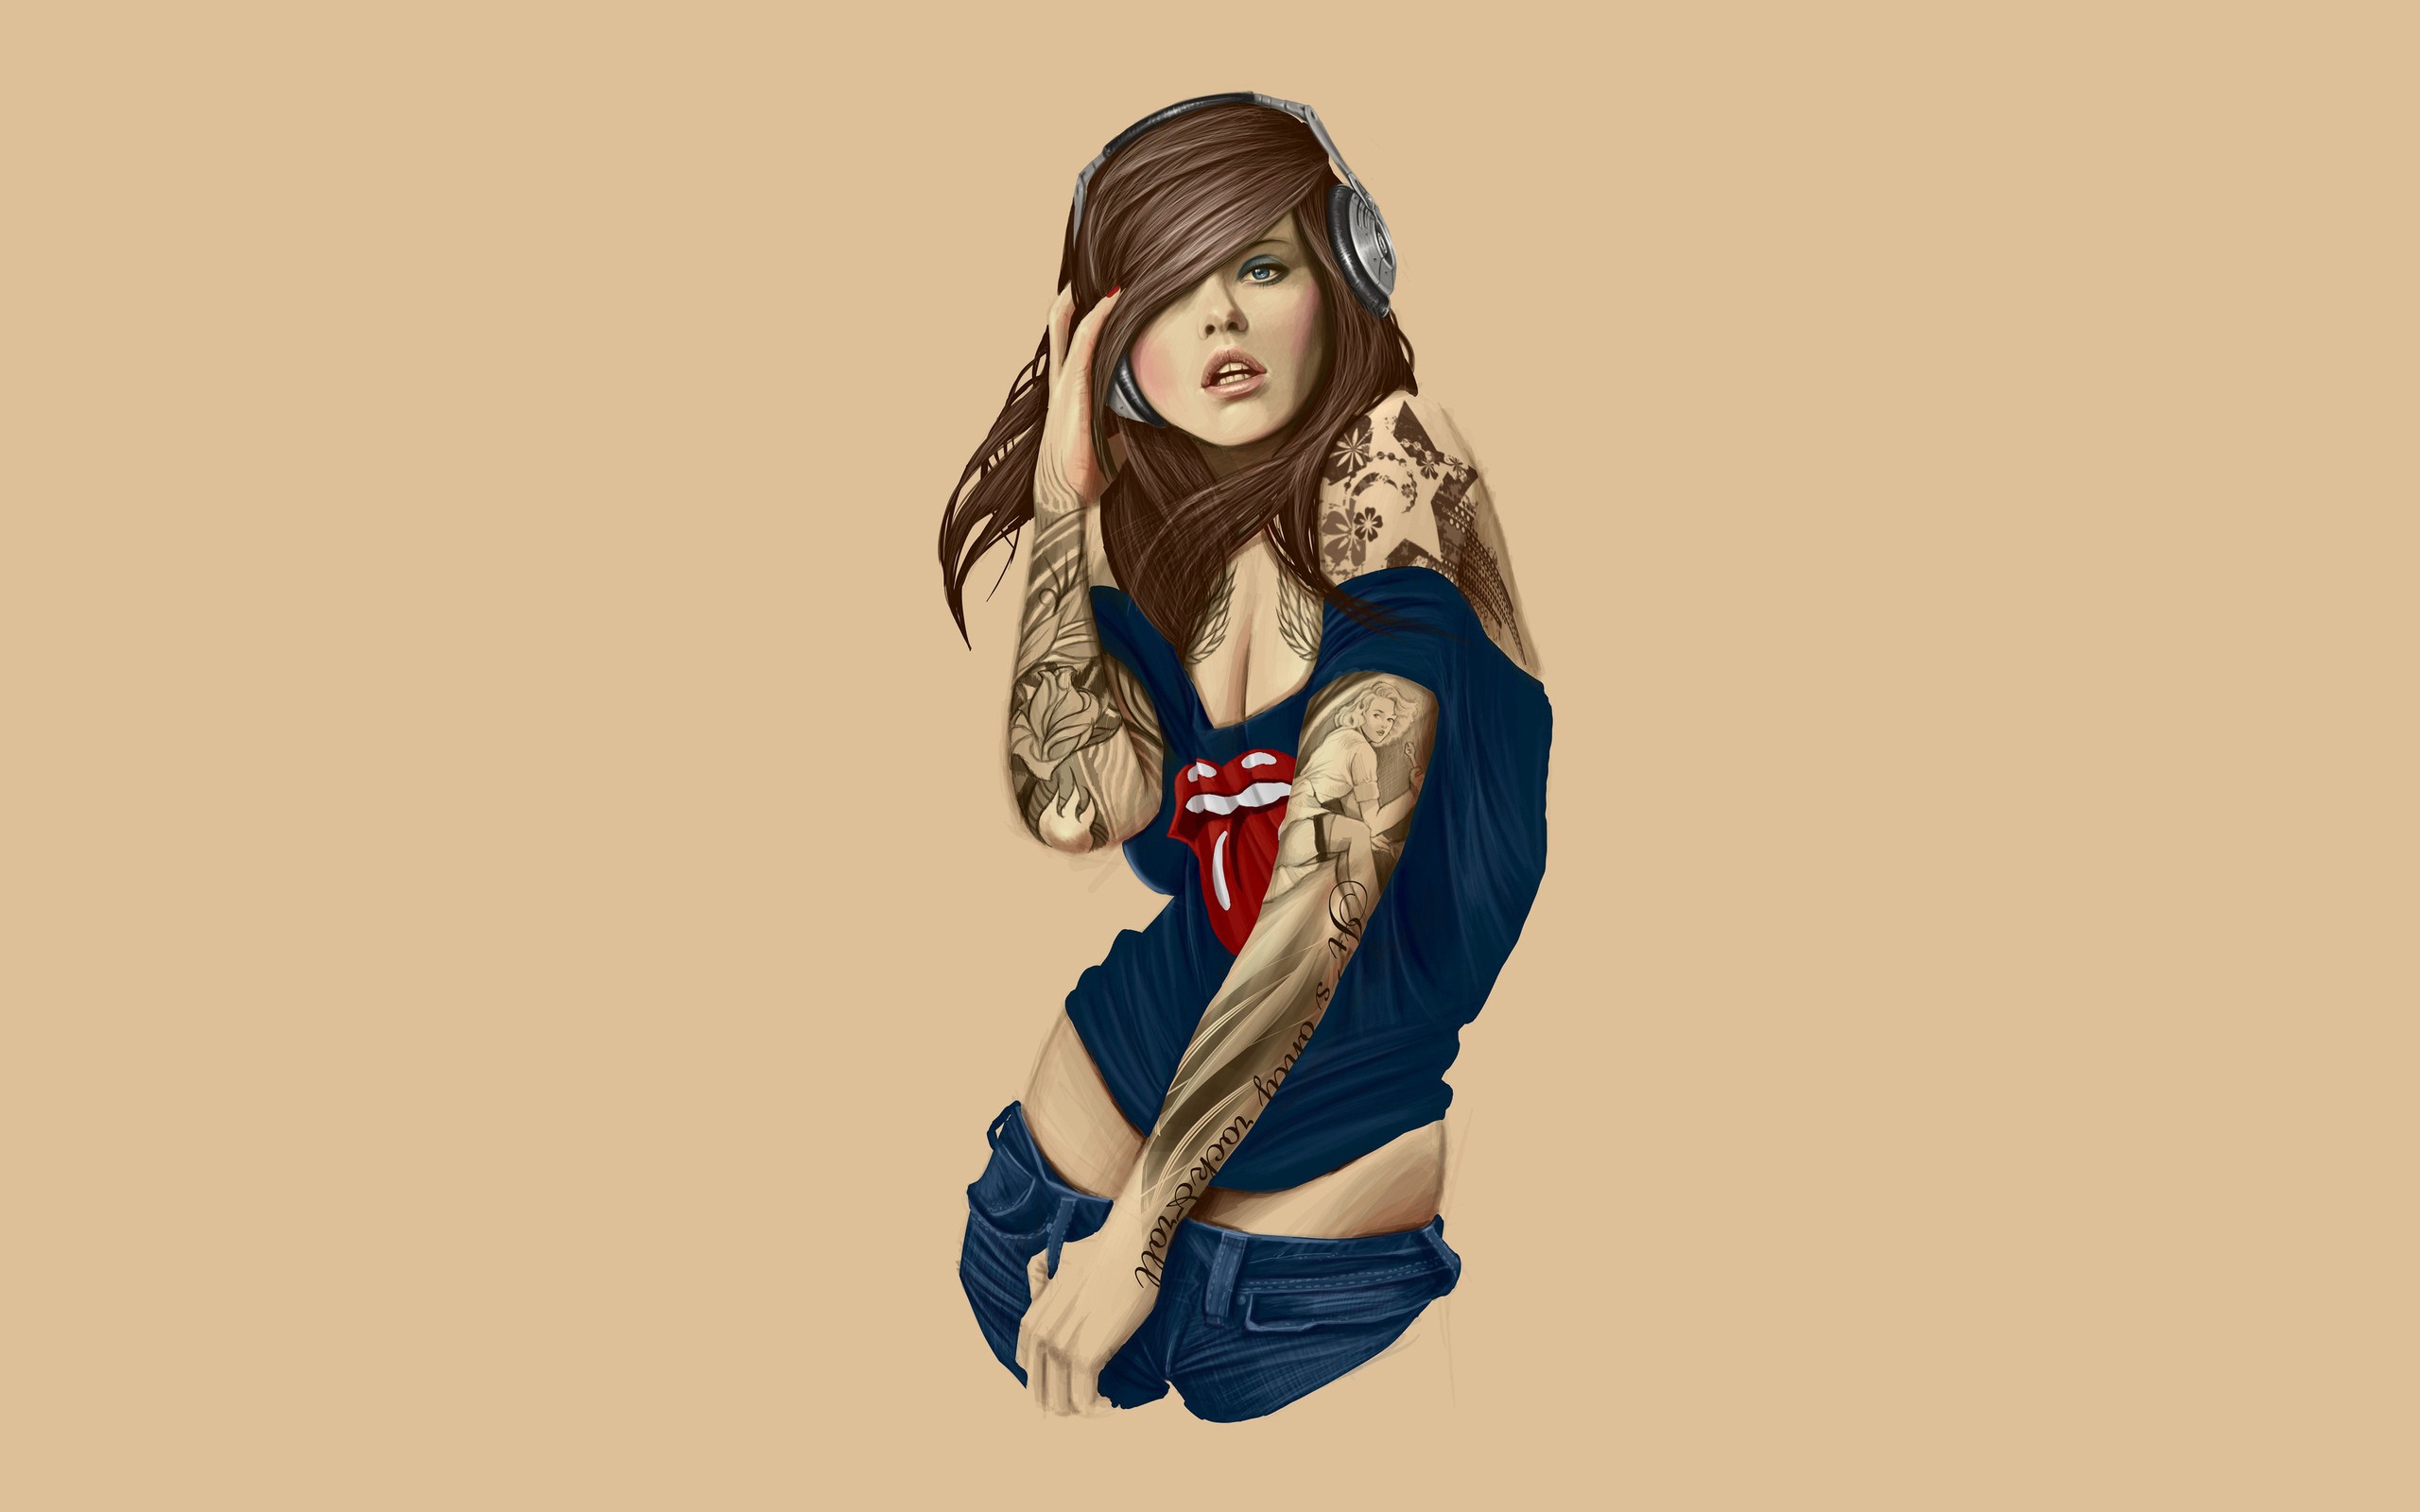 Download hd wallpaper tattoo art - Girls With Tattoo Art Wallpaper